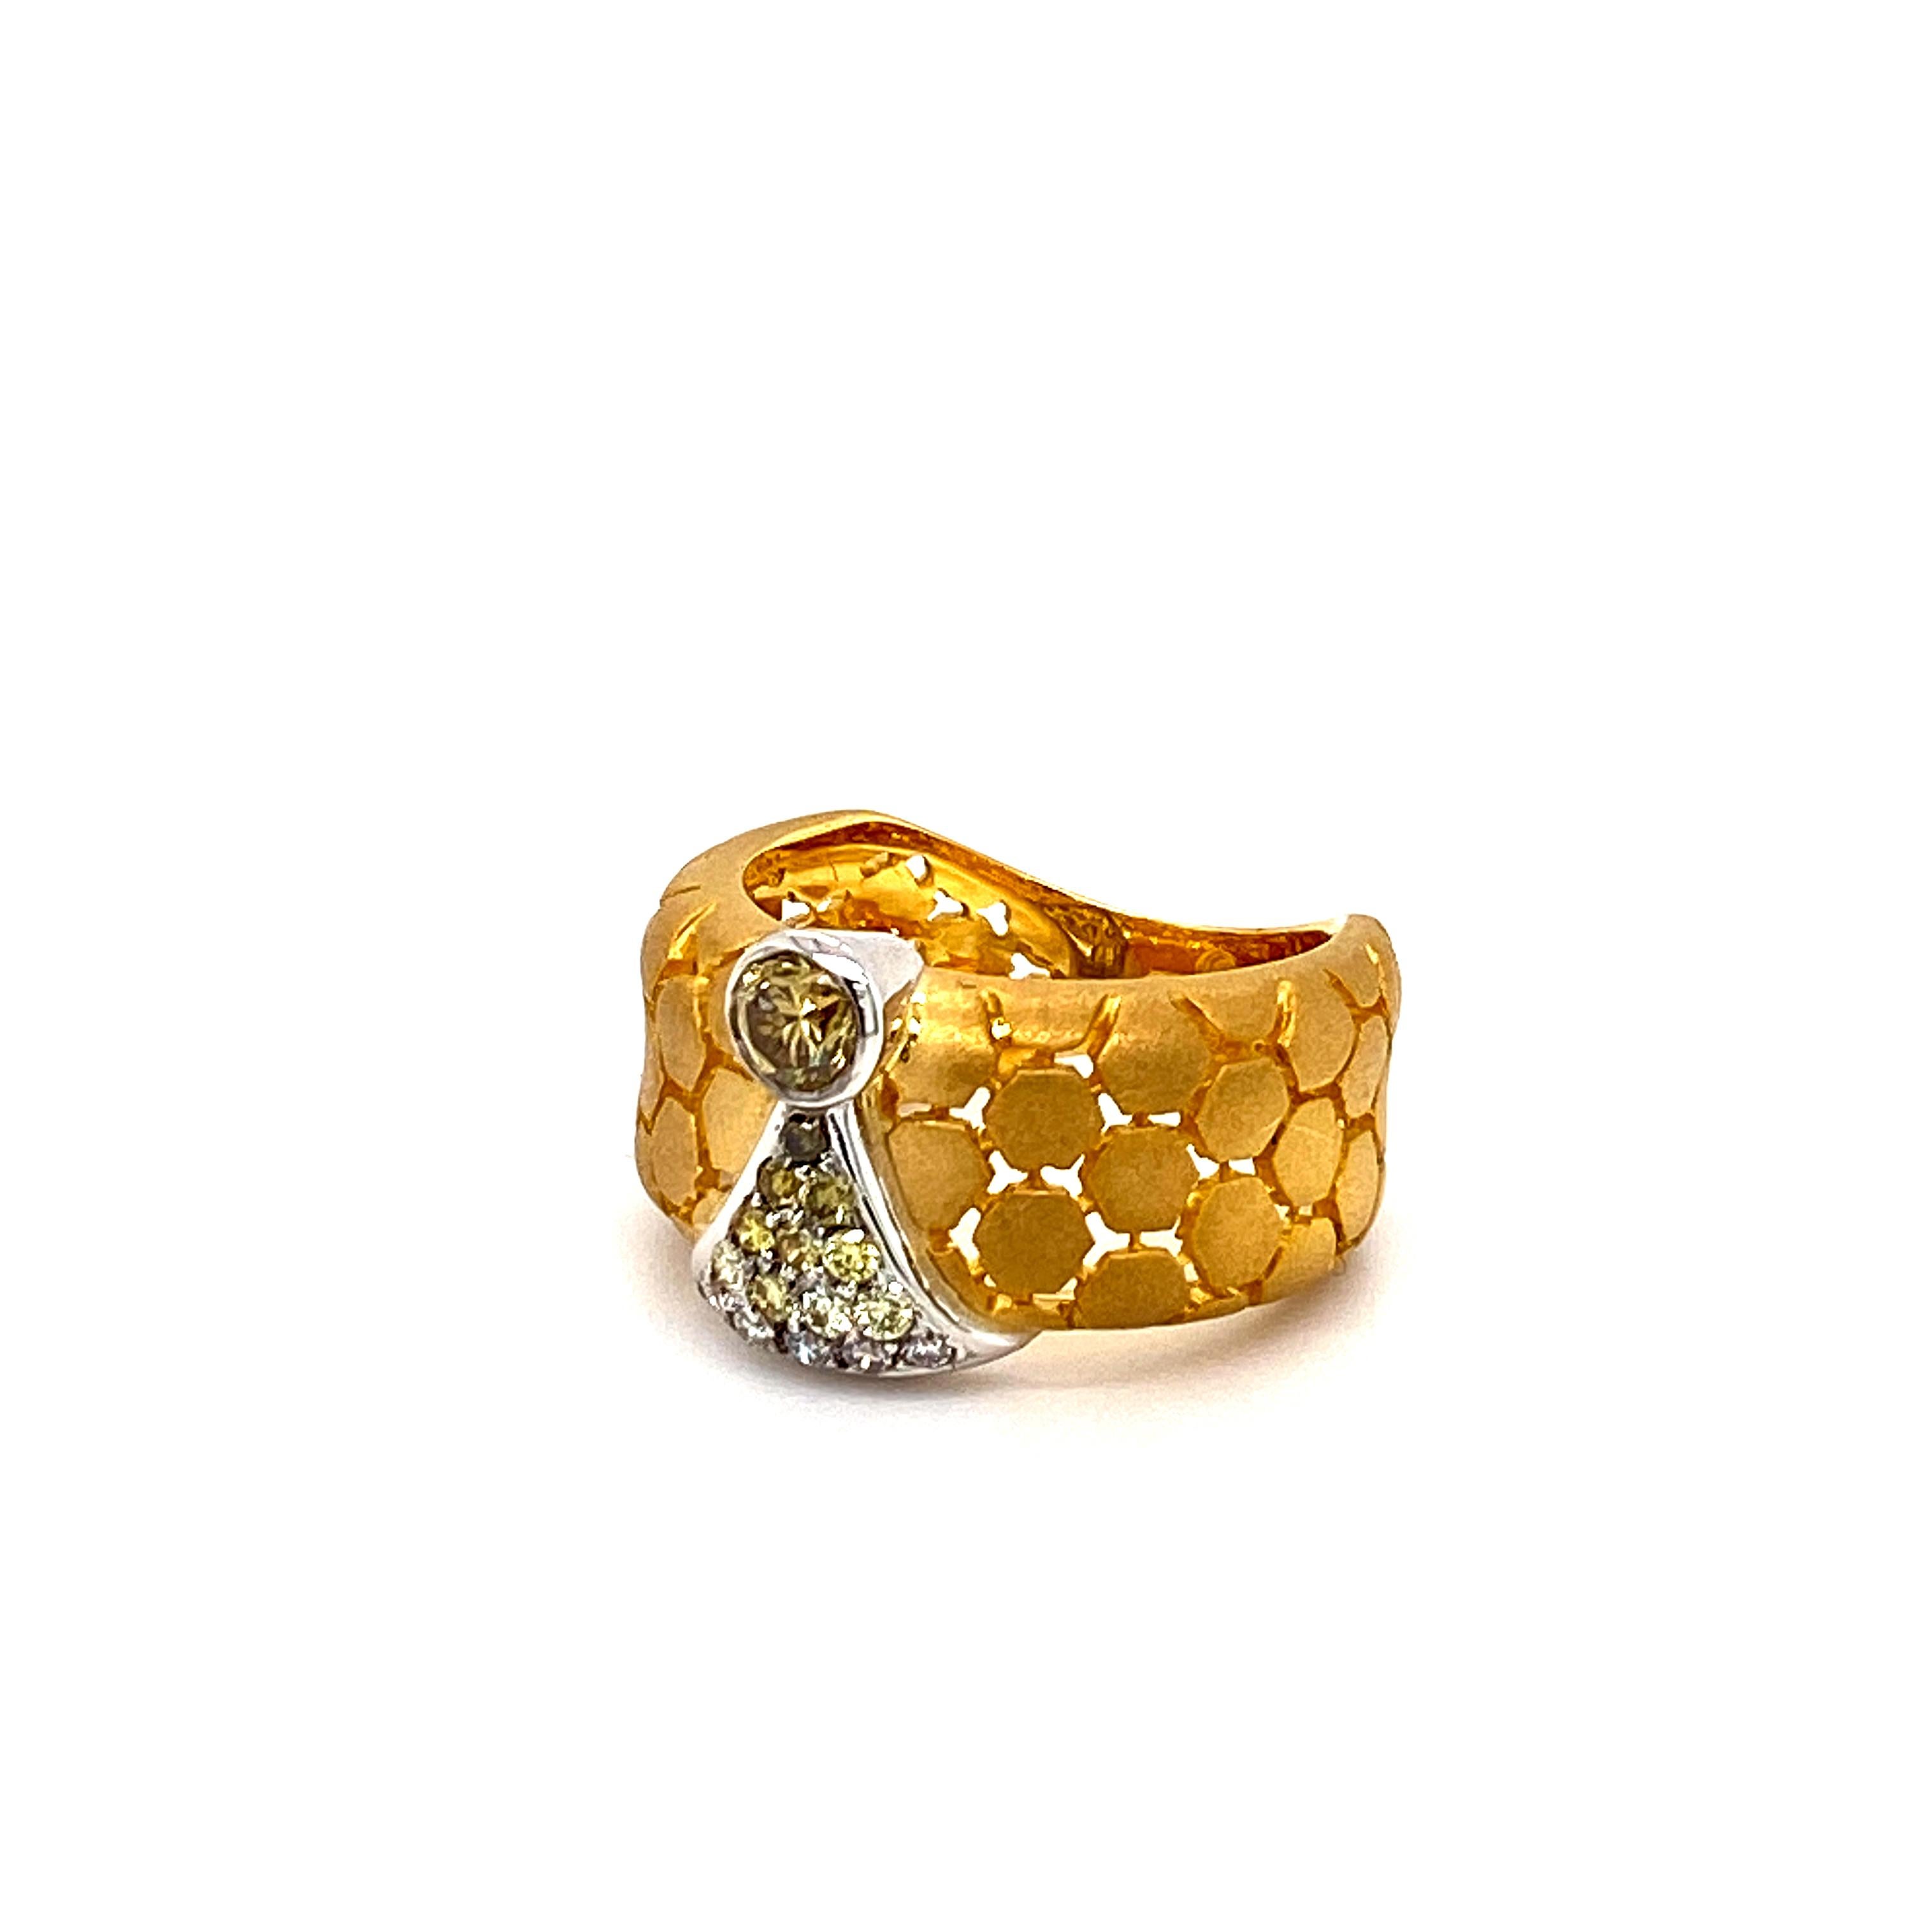 Cette bague en or 18 carats à la finition mate présente un motif en nid d'abeille avec une pierre centrale en diamant rond de couleur fantaisie et de taille brillante, suivie d'un dégradé étincelant de 15 diamants plus petits, sertis en pavé, qui